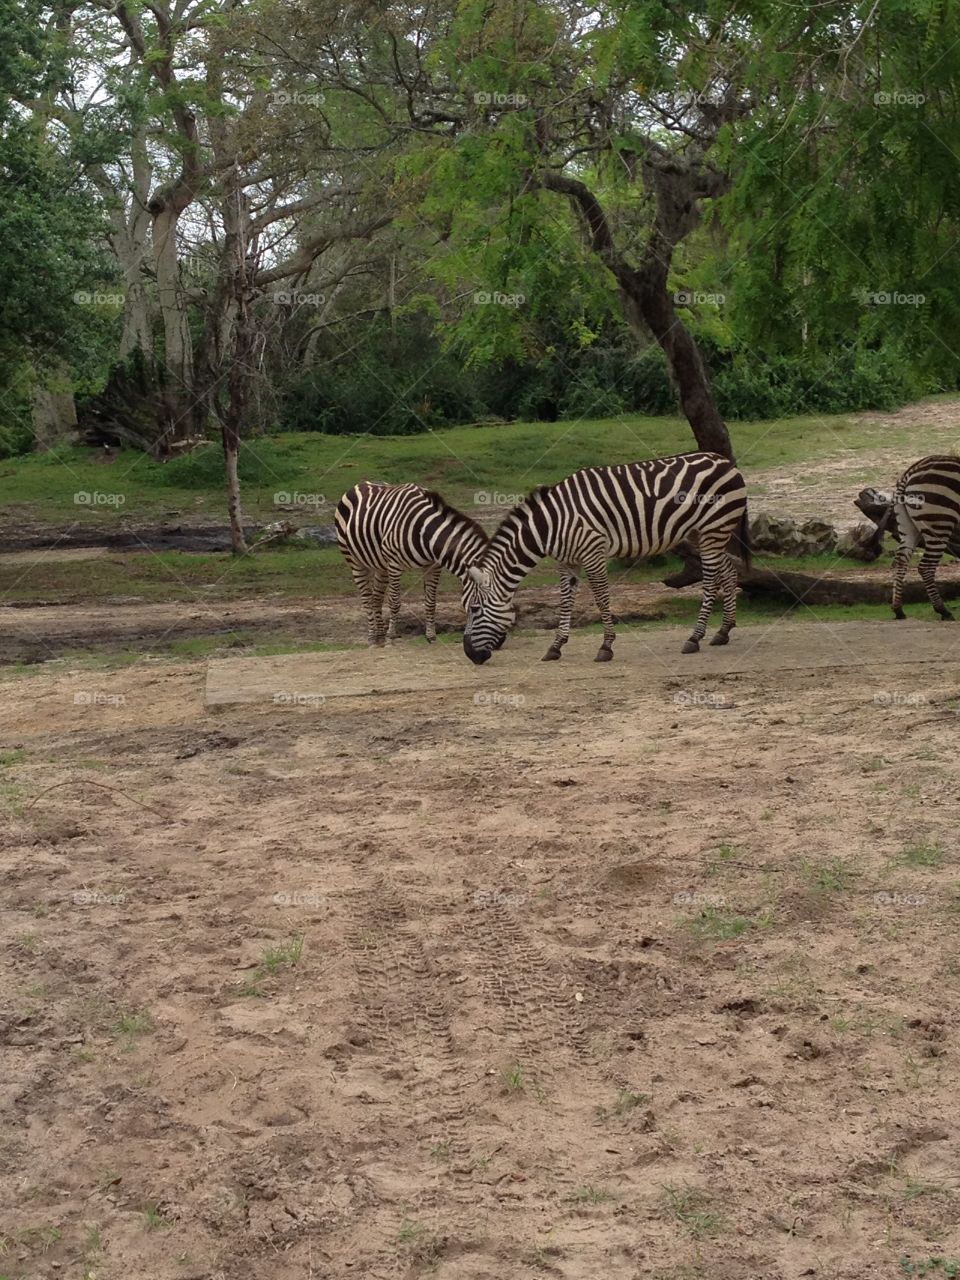 Zebras!